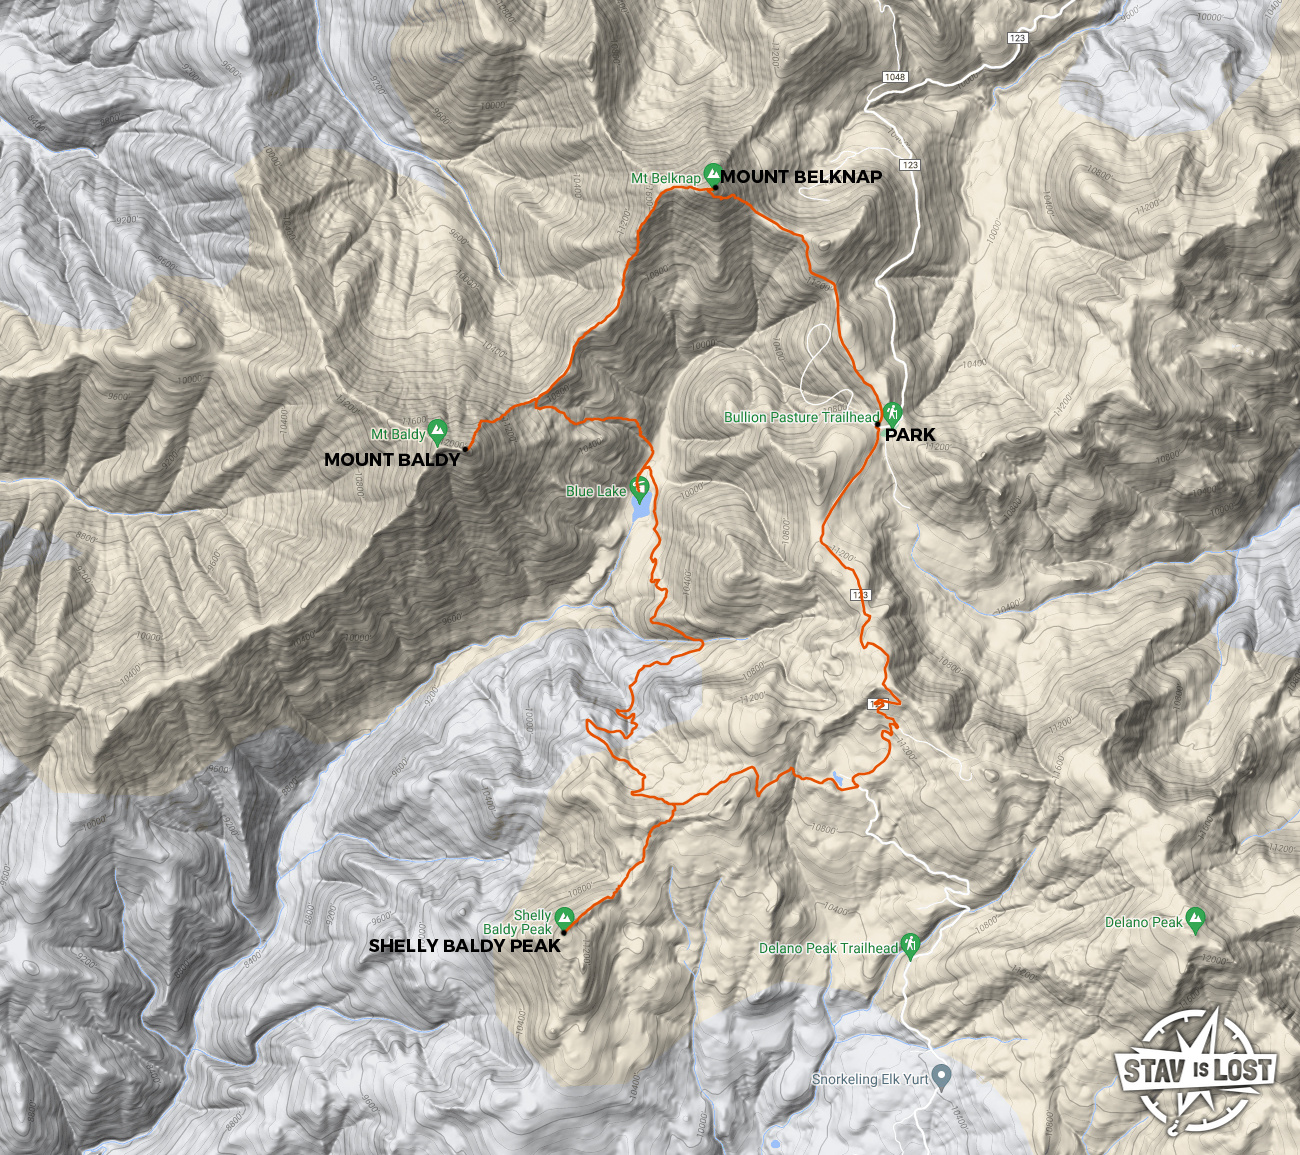 map for Mount Belknap, Mount Baldy, Shelly Baldy Peak by stav is lost